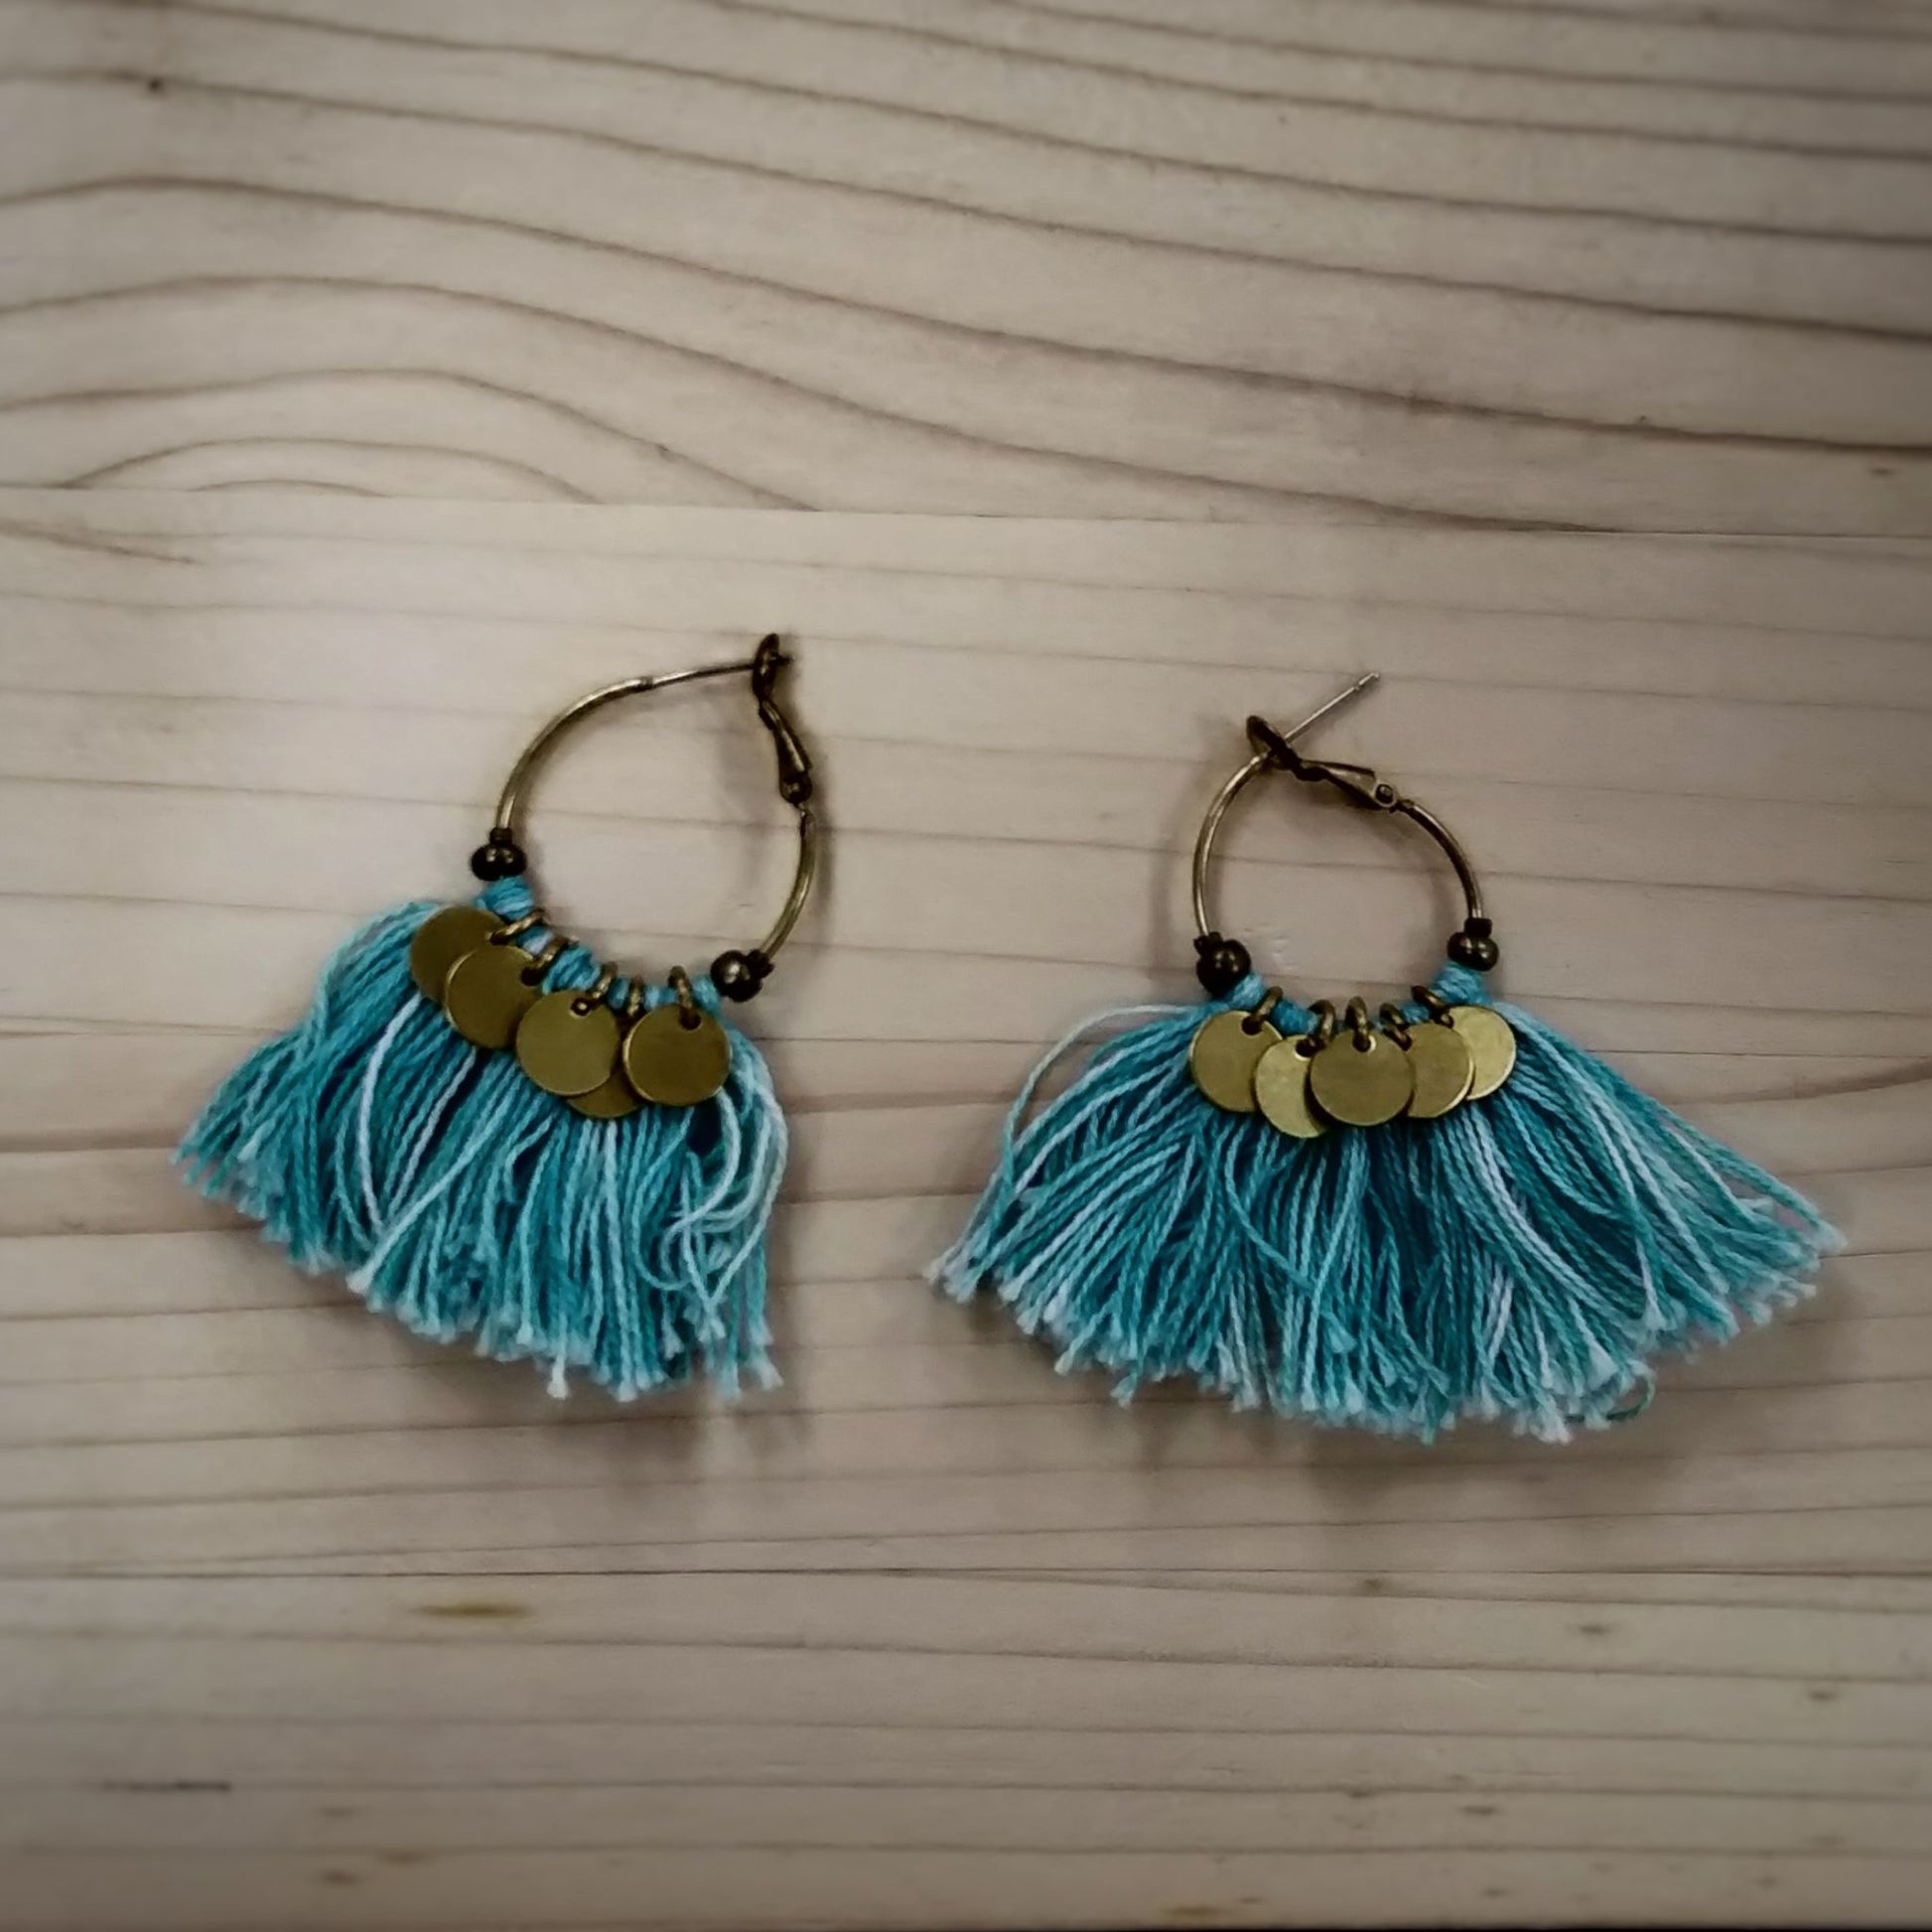 Tassel Earrings  Handmade and Fair Trade - blue tassel earrings against wooden background